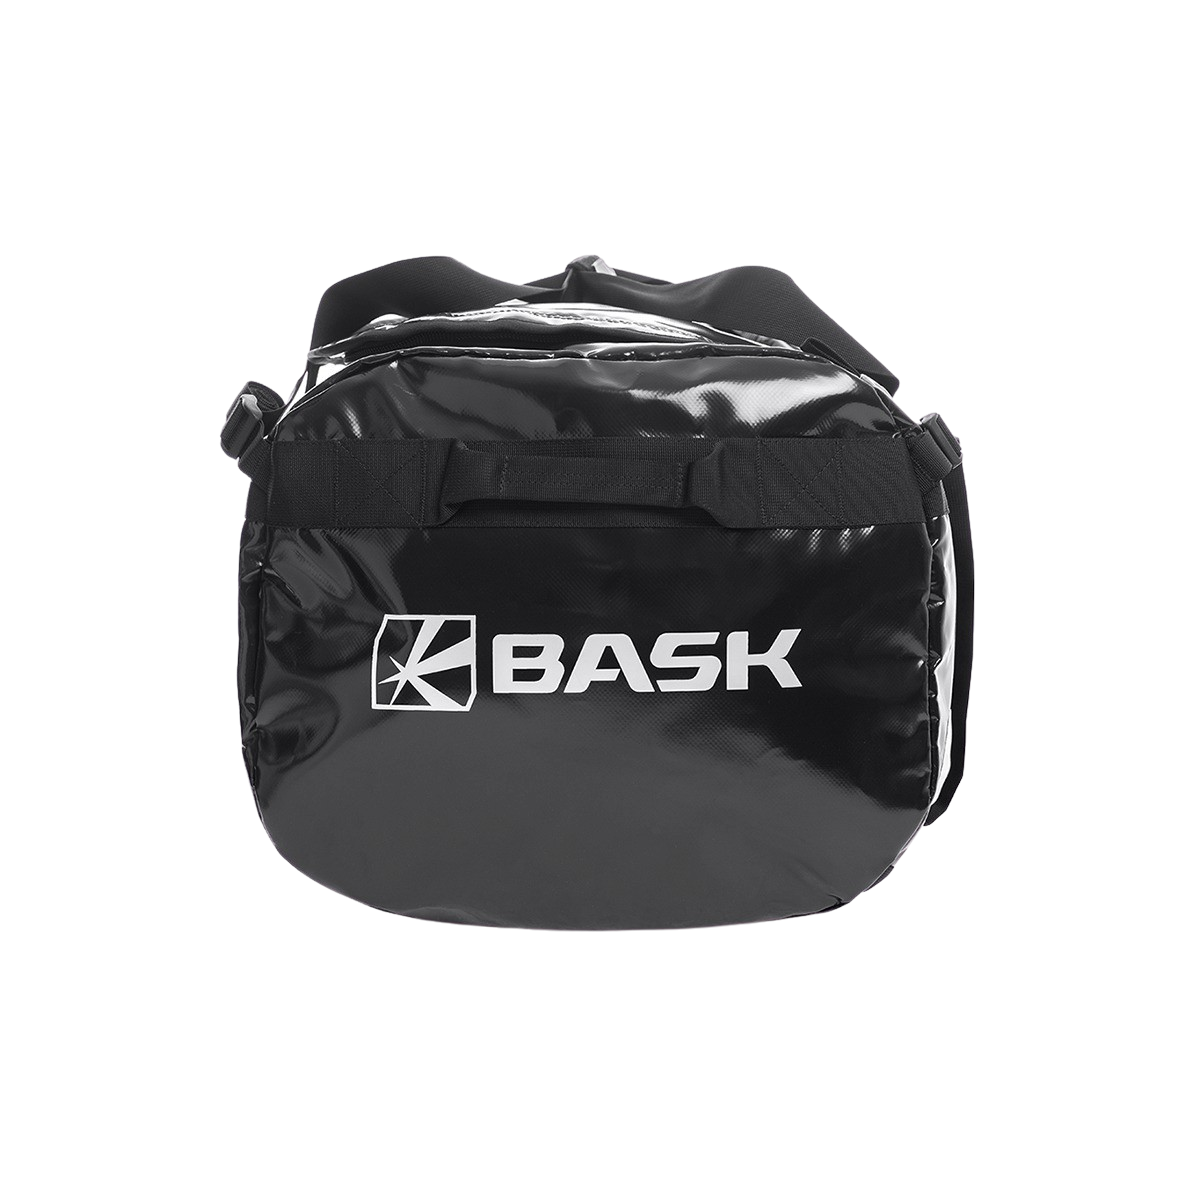 Сумка BASK, цвет черный 2345-9009 Transport 100 v2 - фото 2